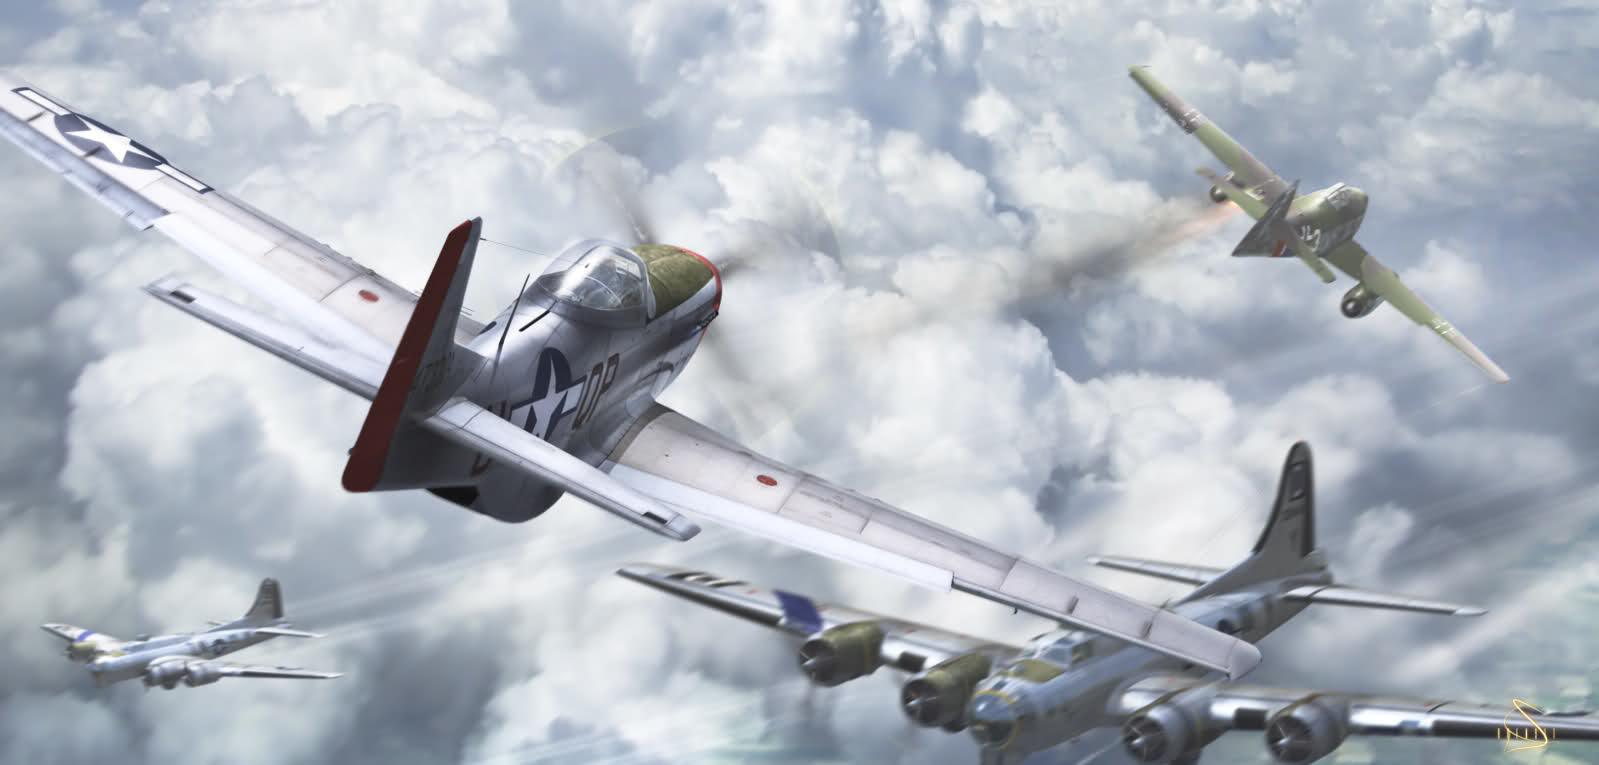 P-51 Mustang vs Me-262